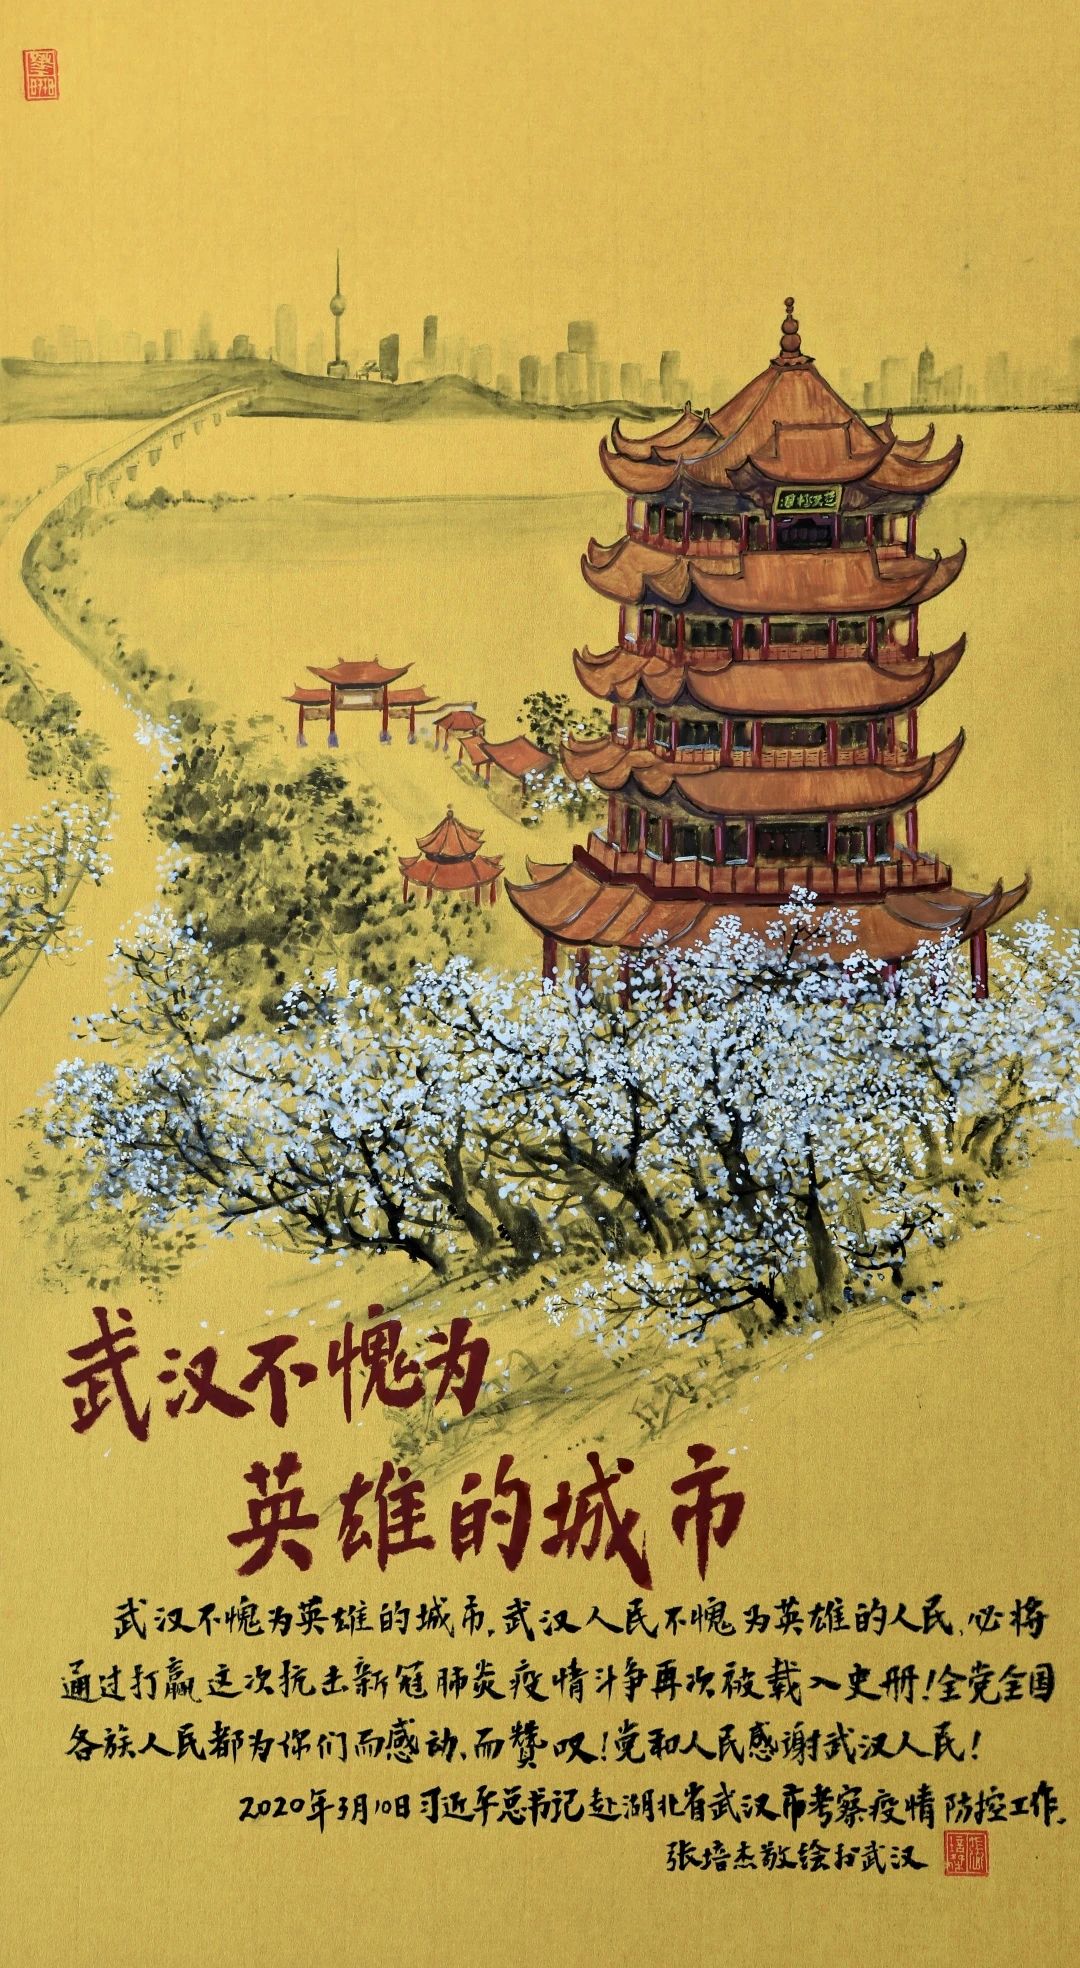 点赞 | 我校教师绘画作品入藏中国印刷博物馆